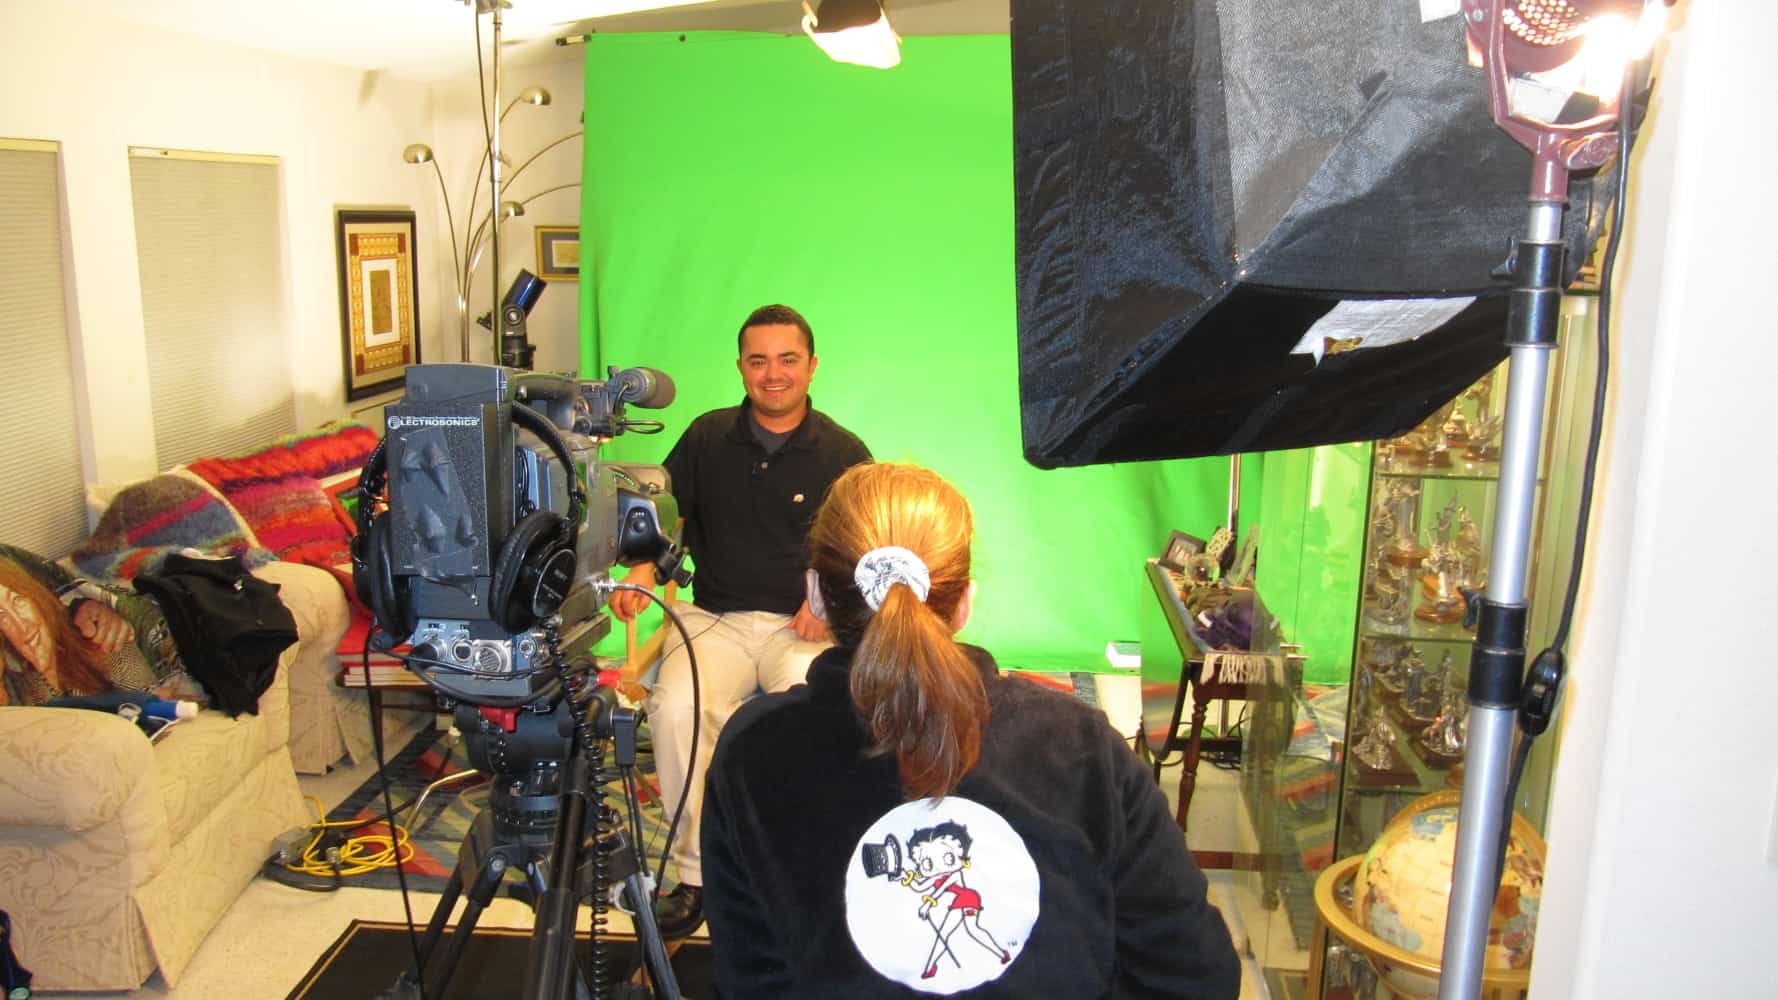 chula vista little league coach oscar castro green screen interview studio